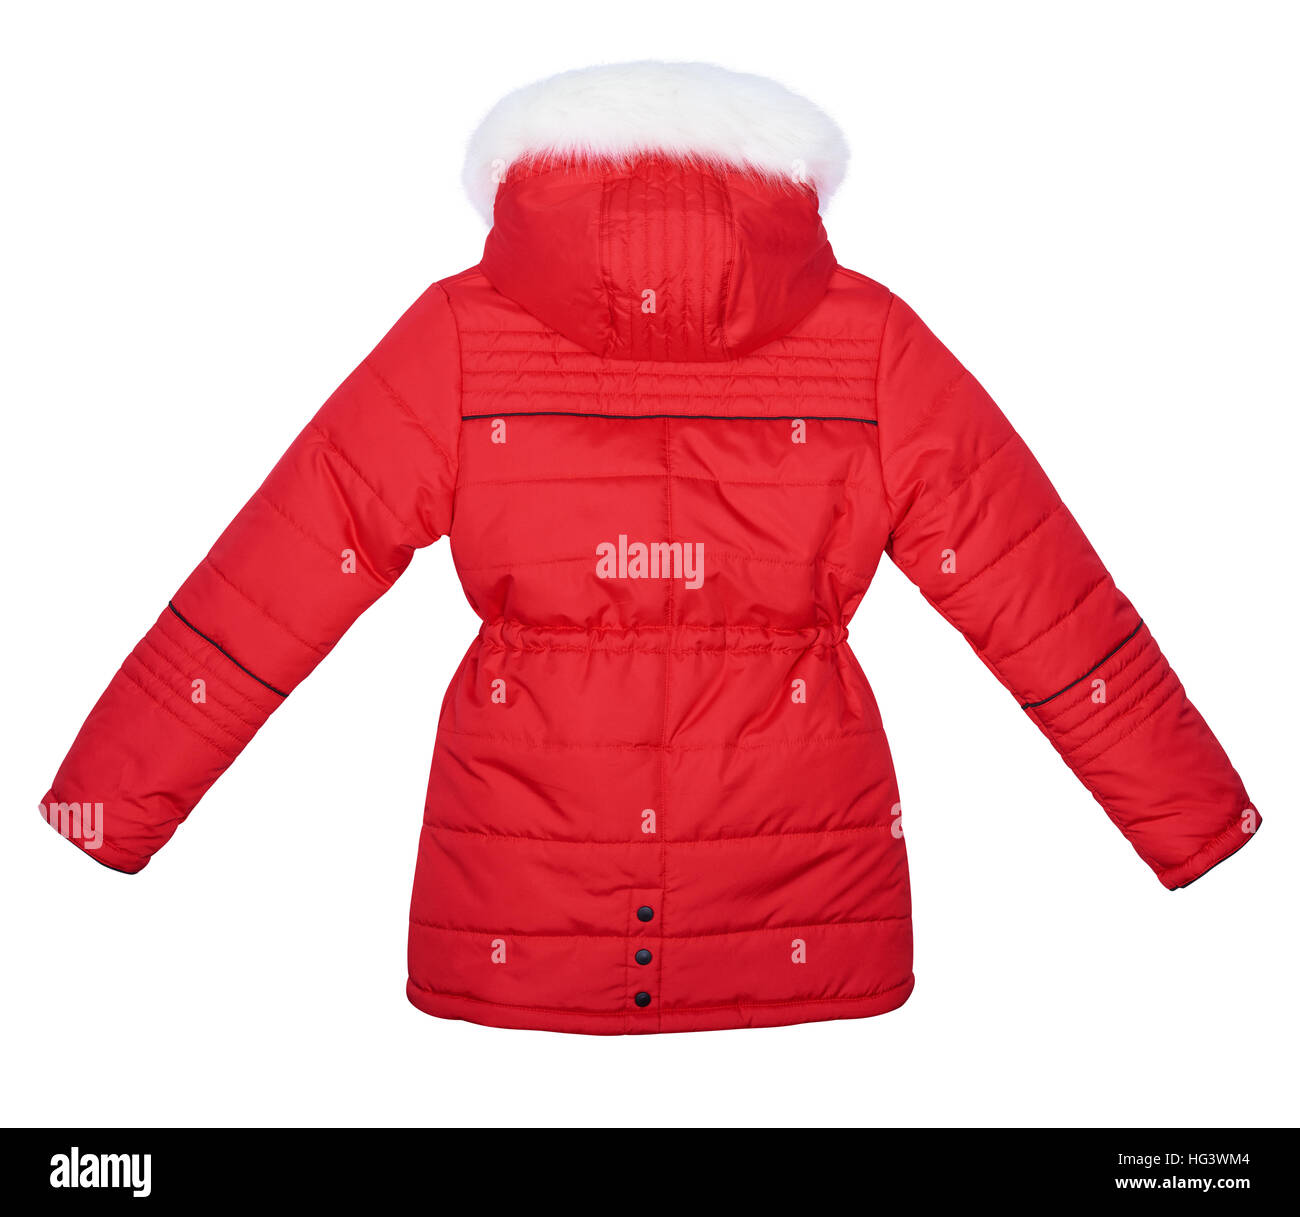 Kinder rote Jacke mit Kapuze mit Pelz getrimmt. Isoliert auf weißem  Hintergrund. Ansicht von hinten Stockfotografie - Alamy